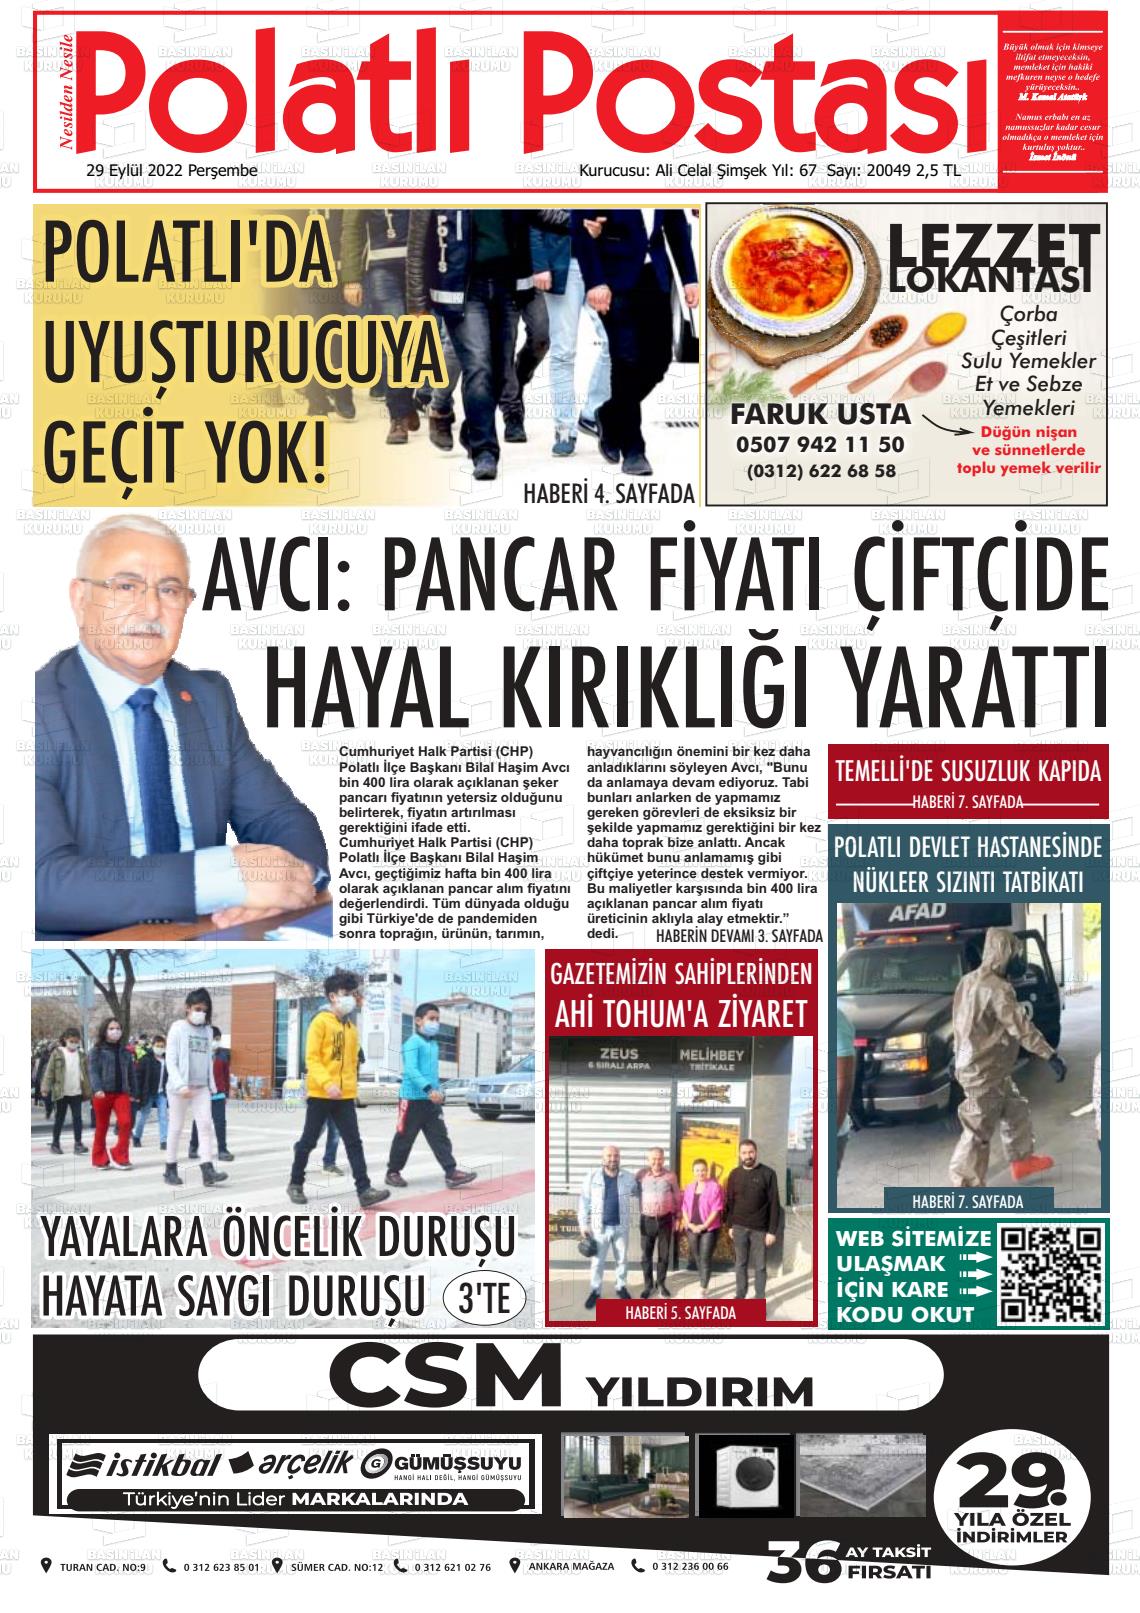 29 Eylül 2022 Polatlı Postası Gazete Manşeti